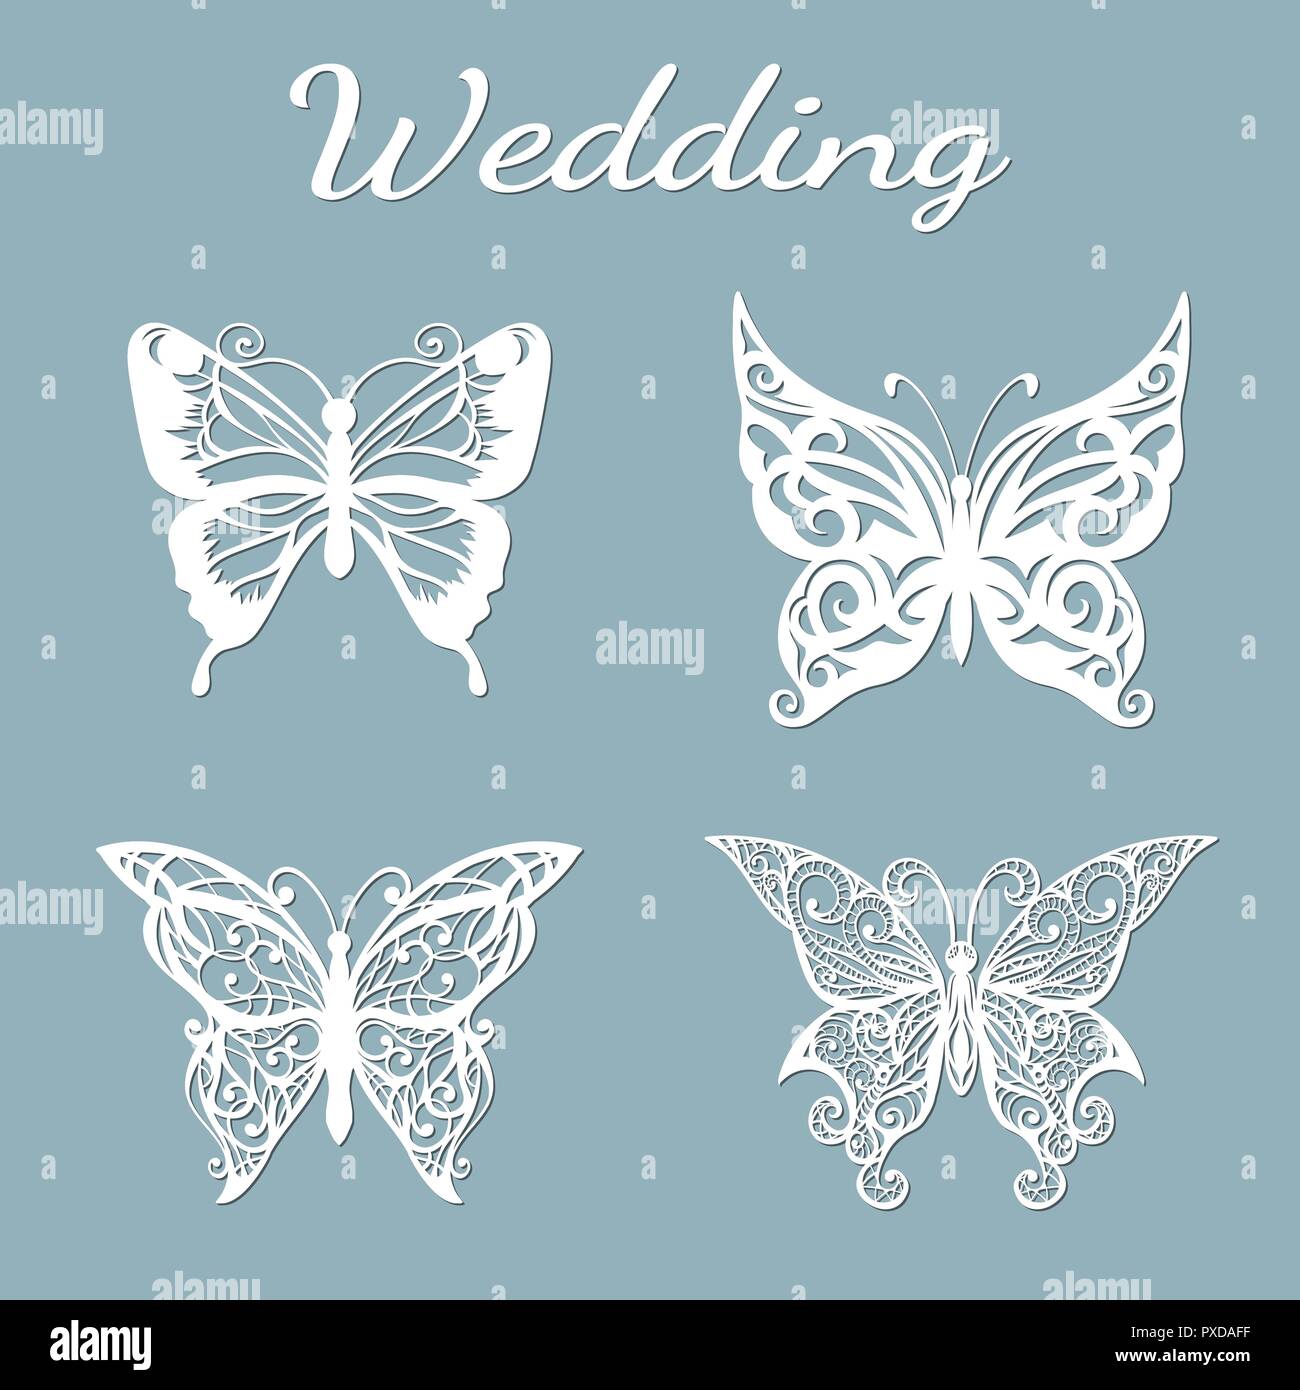 Immagine con la scritta-matrimonio. Modello con illustrazione vettoriale di farfalle. Per il taglio laser plotter e stampa serigrafica Illustrazione Vettoriale